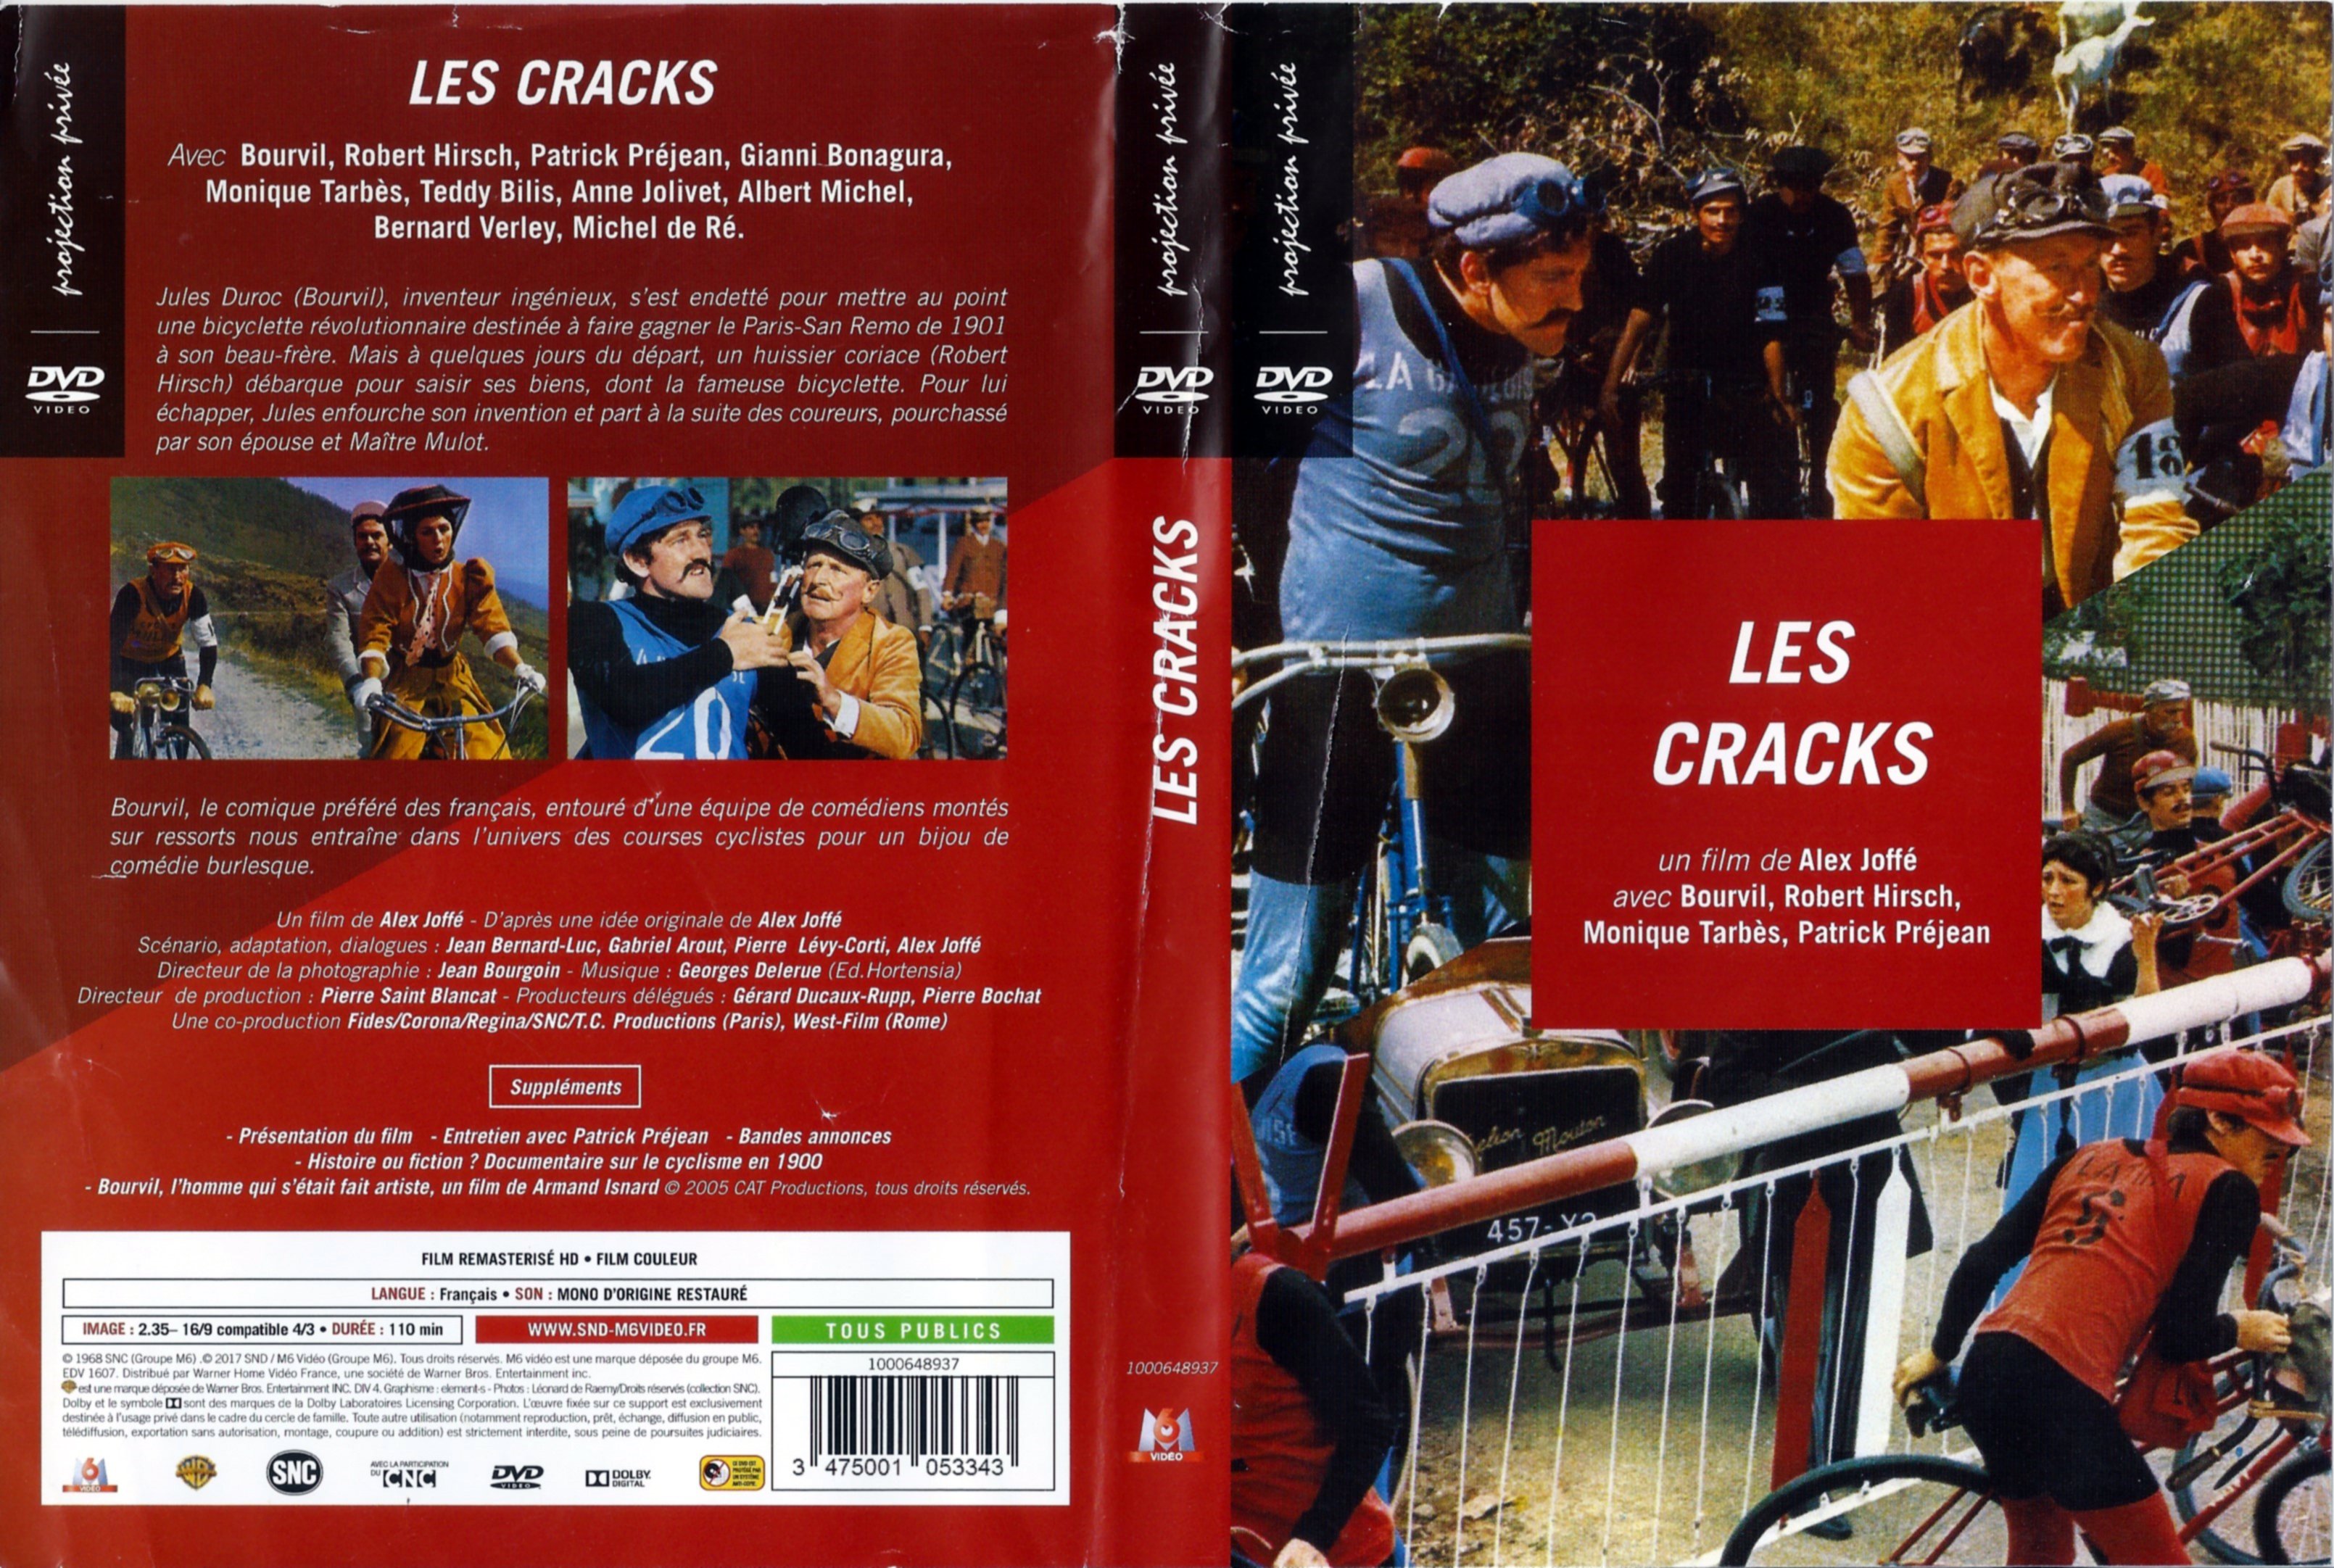 Jaquette DVD Les cracks v3